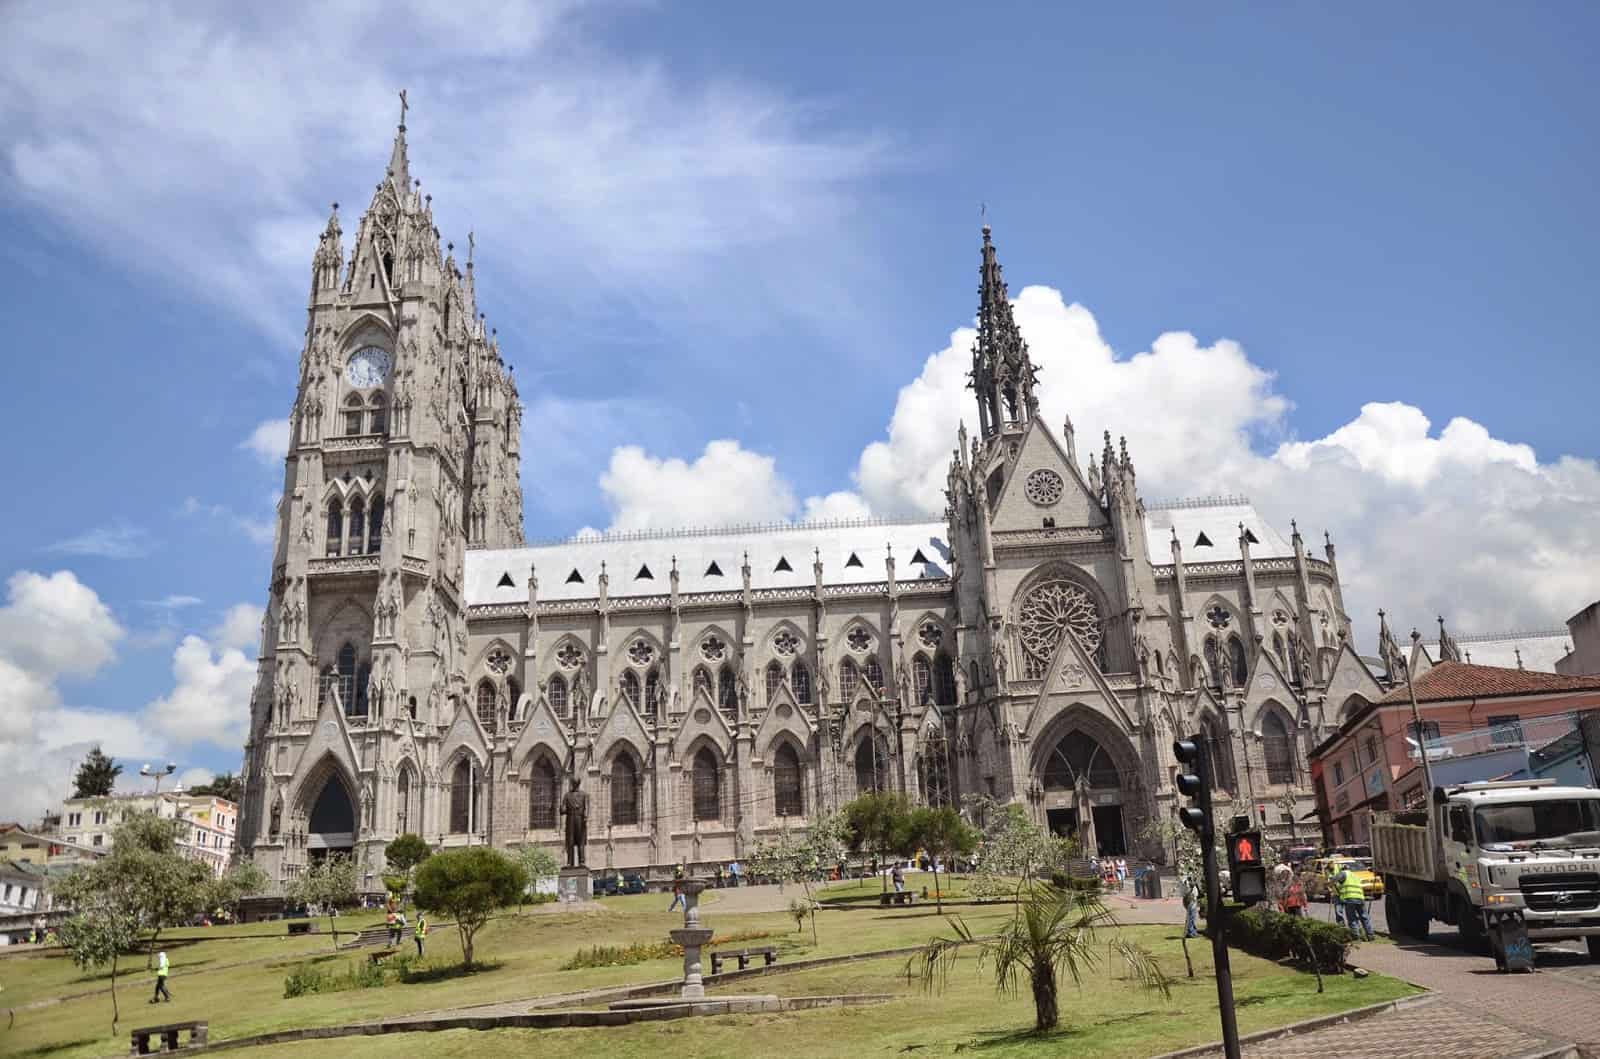 Basílica del Voto Nacional in Quito, Ecuador